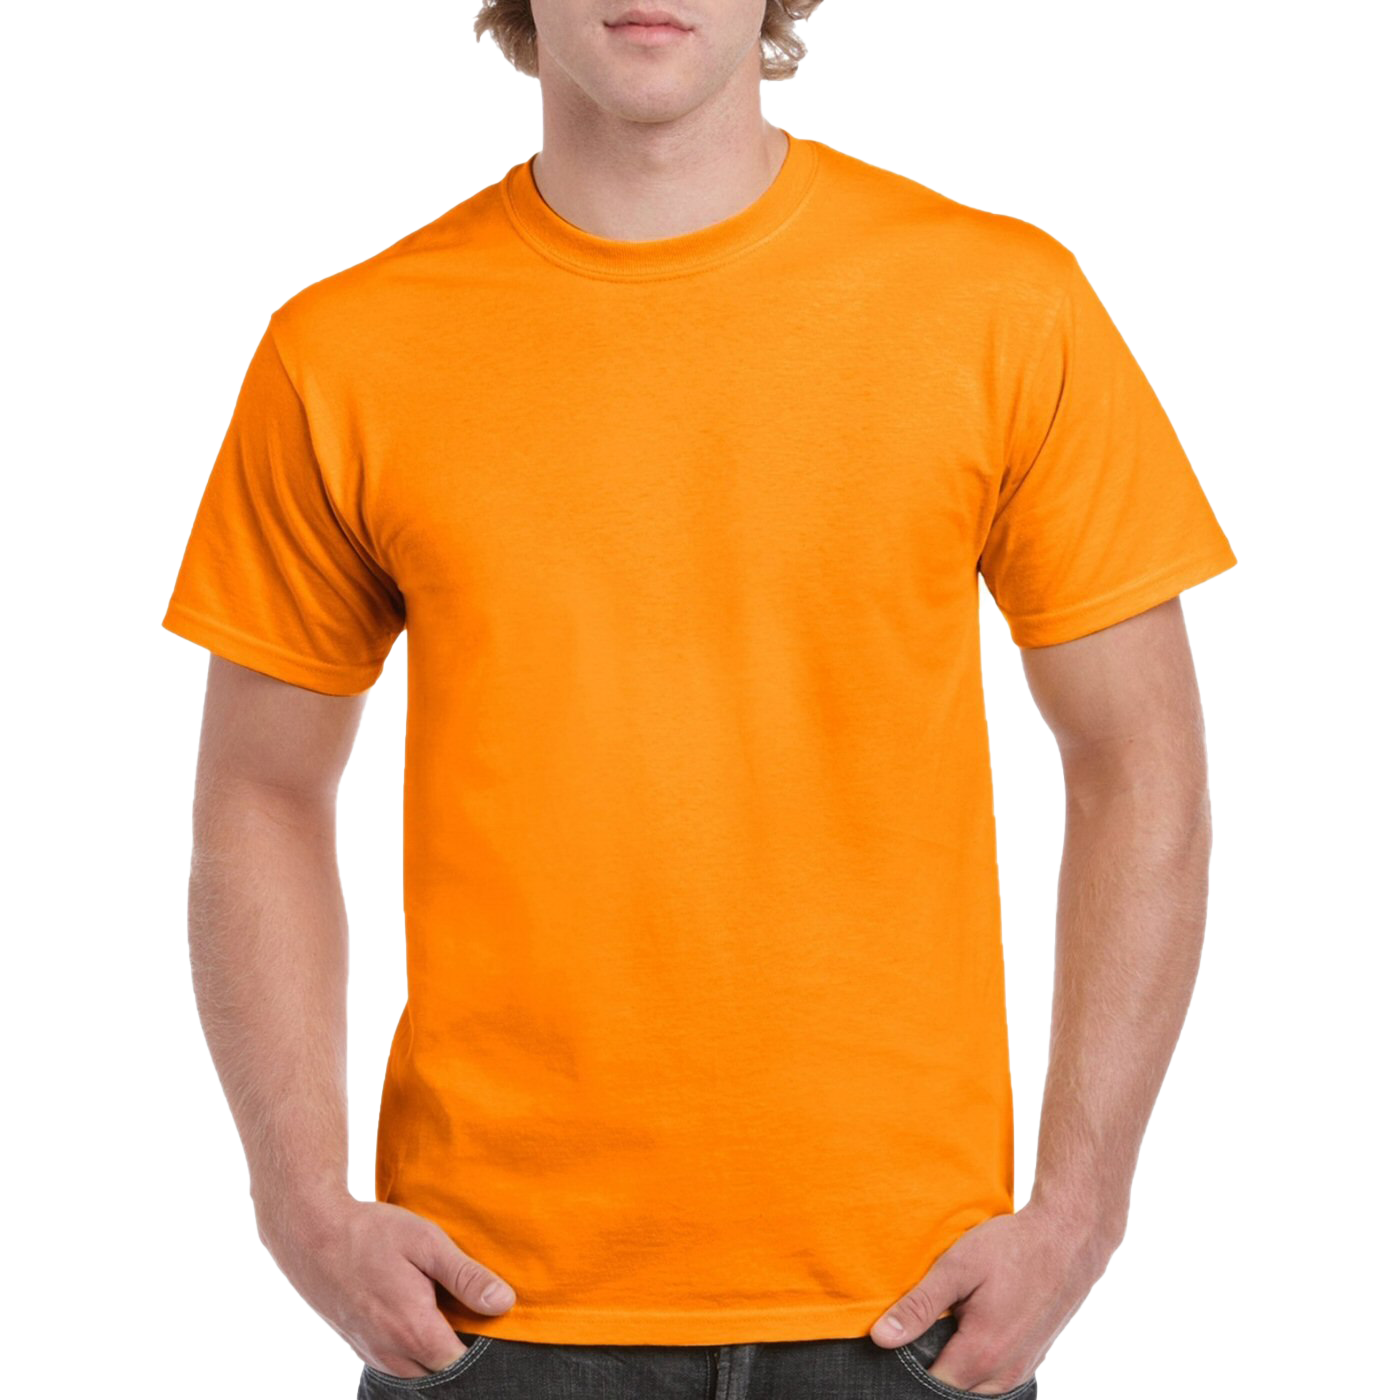 T-shirt de laranja simples foto foto